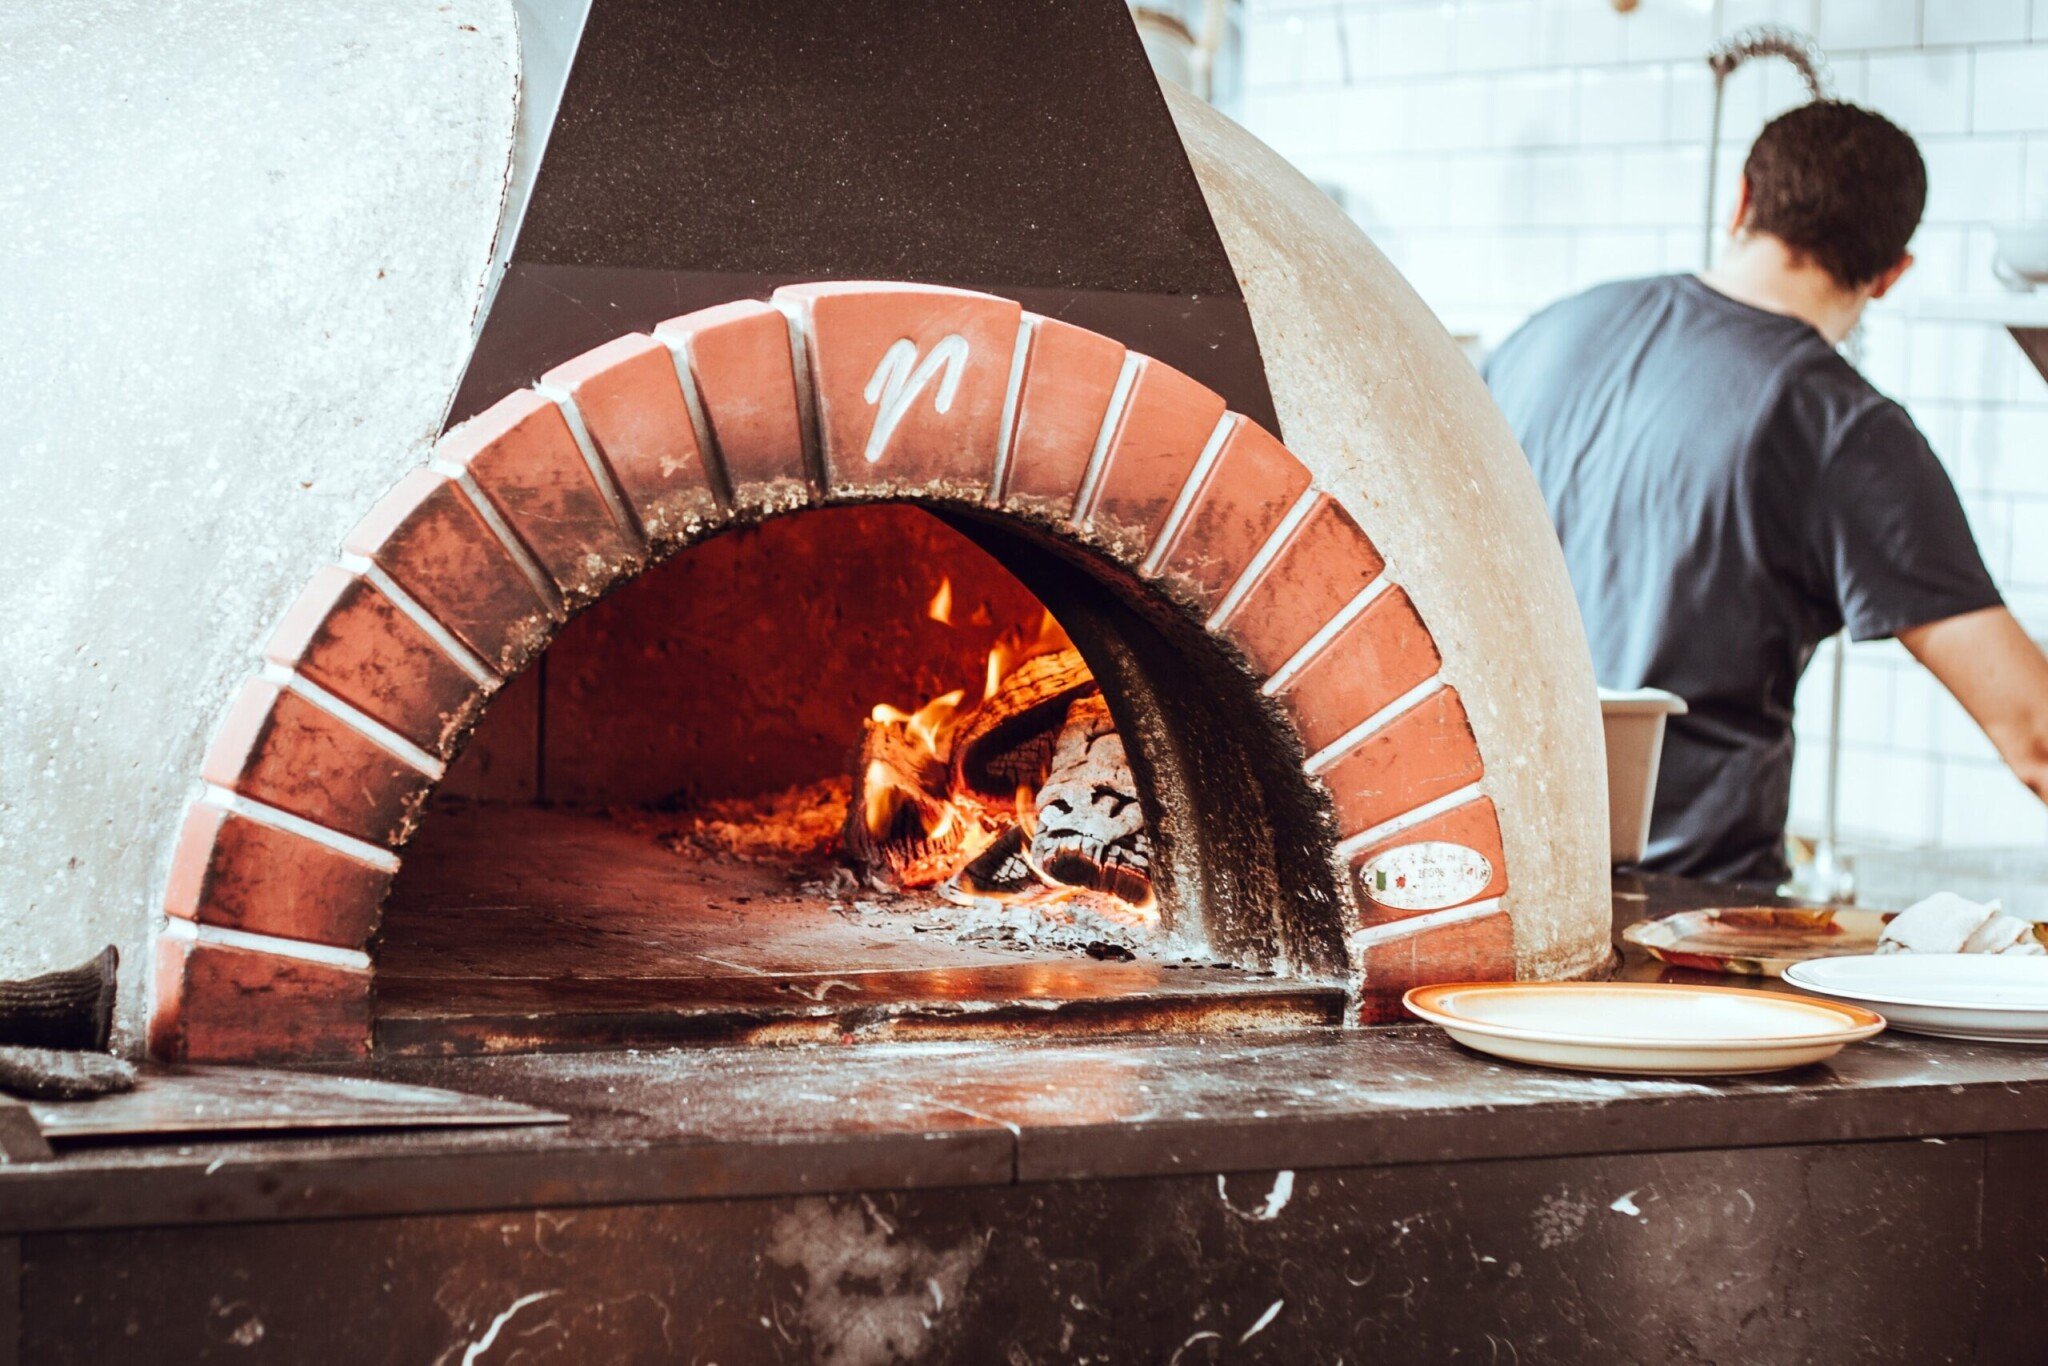 New York, pizza a klimatičtí pokrytci. Co odkrývá spor o tradiční pece na dřevo a uhlí?